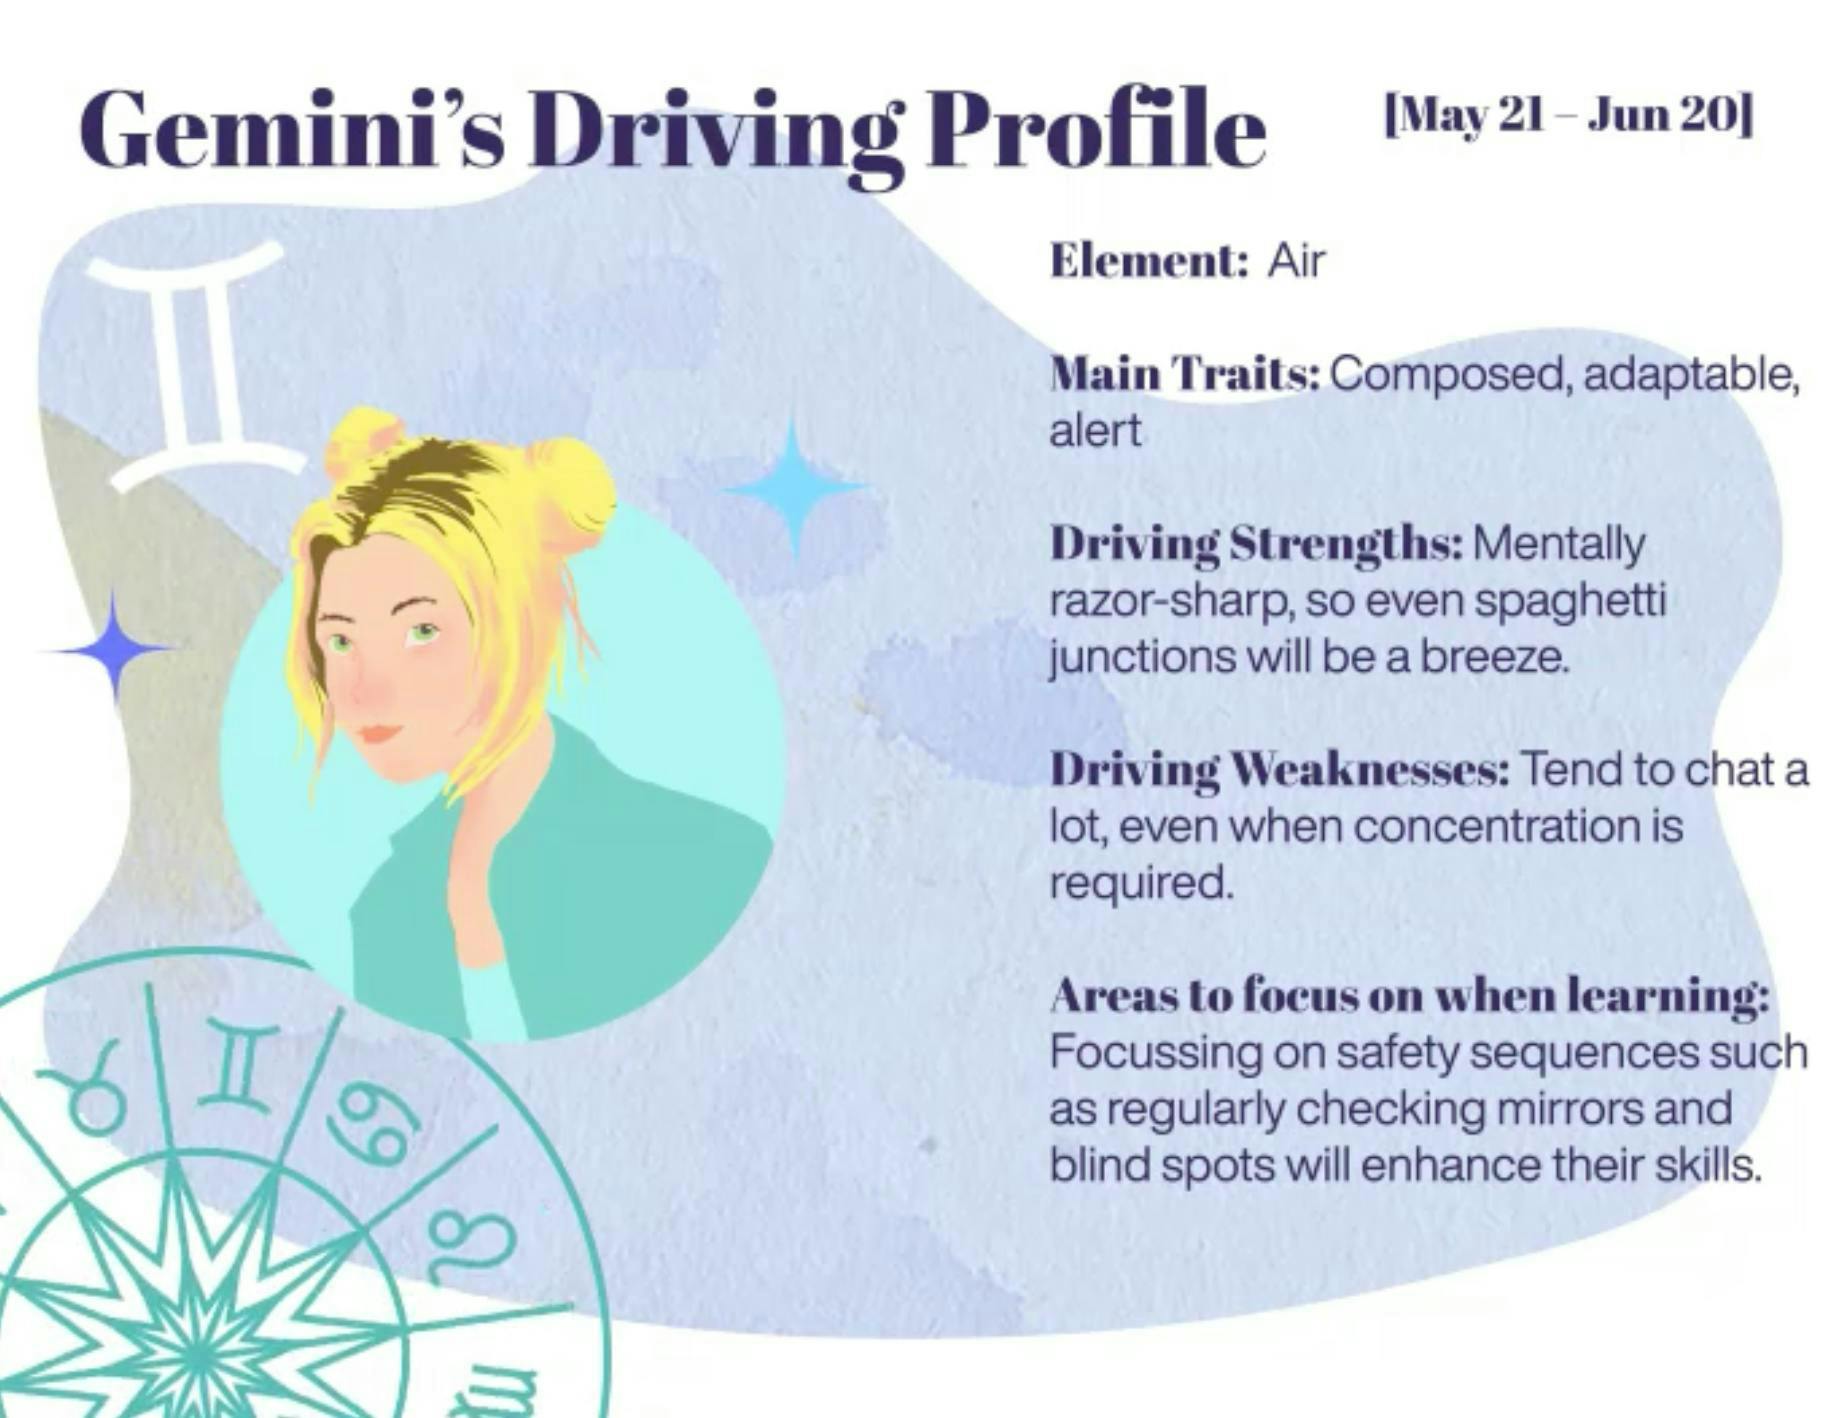 Gemini driving profile